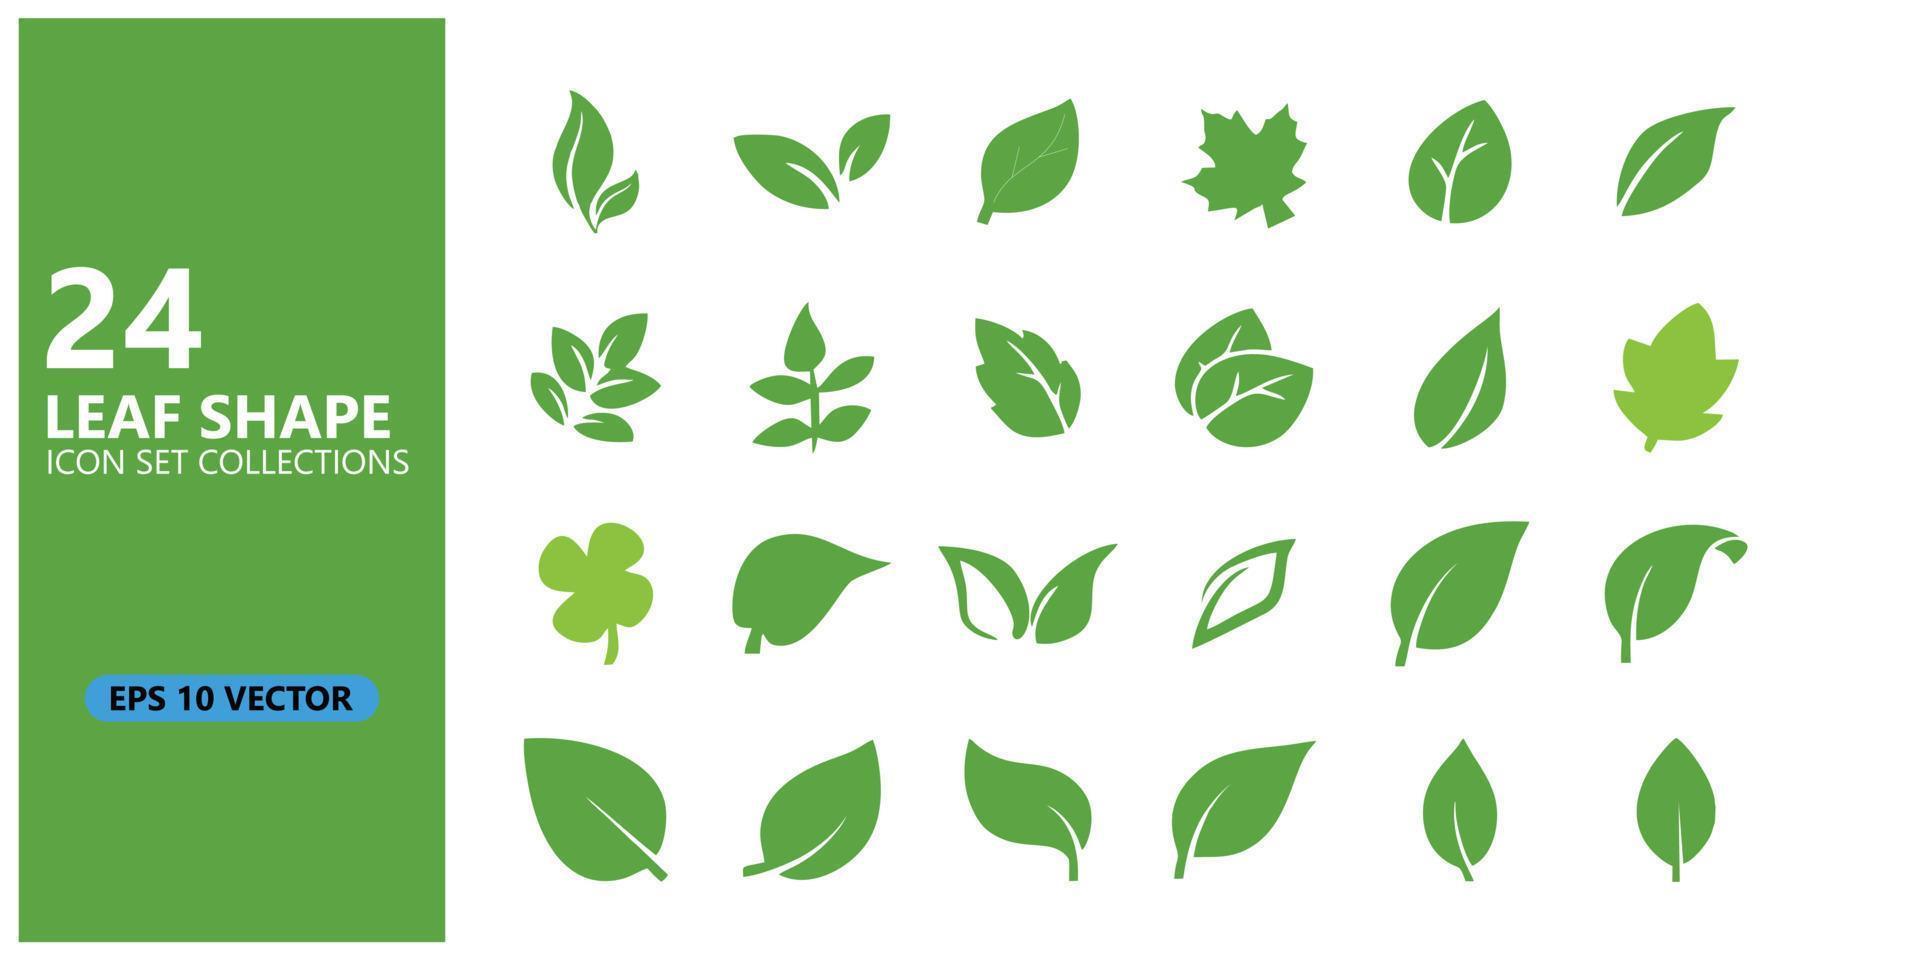 24 sets bladpictogrammen. ep10 stijl vector. bladsymbolen die kunnen worden gebruikt voor logo's, medische, farmaceutische, gezondheids-, botanische en natuurpictogrammen. bewerkbare grafische ontwerpelementen vector